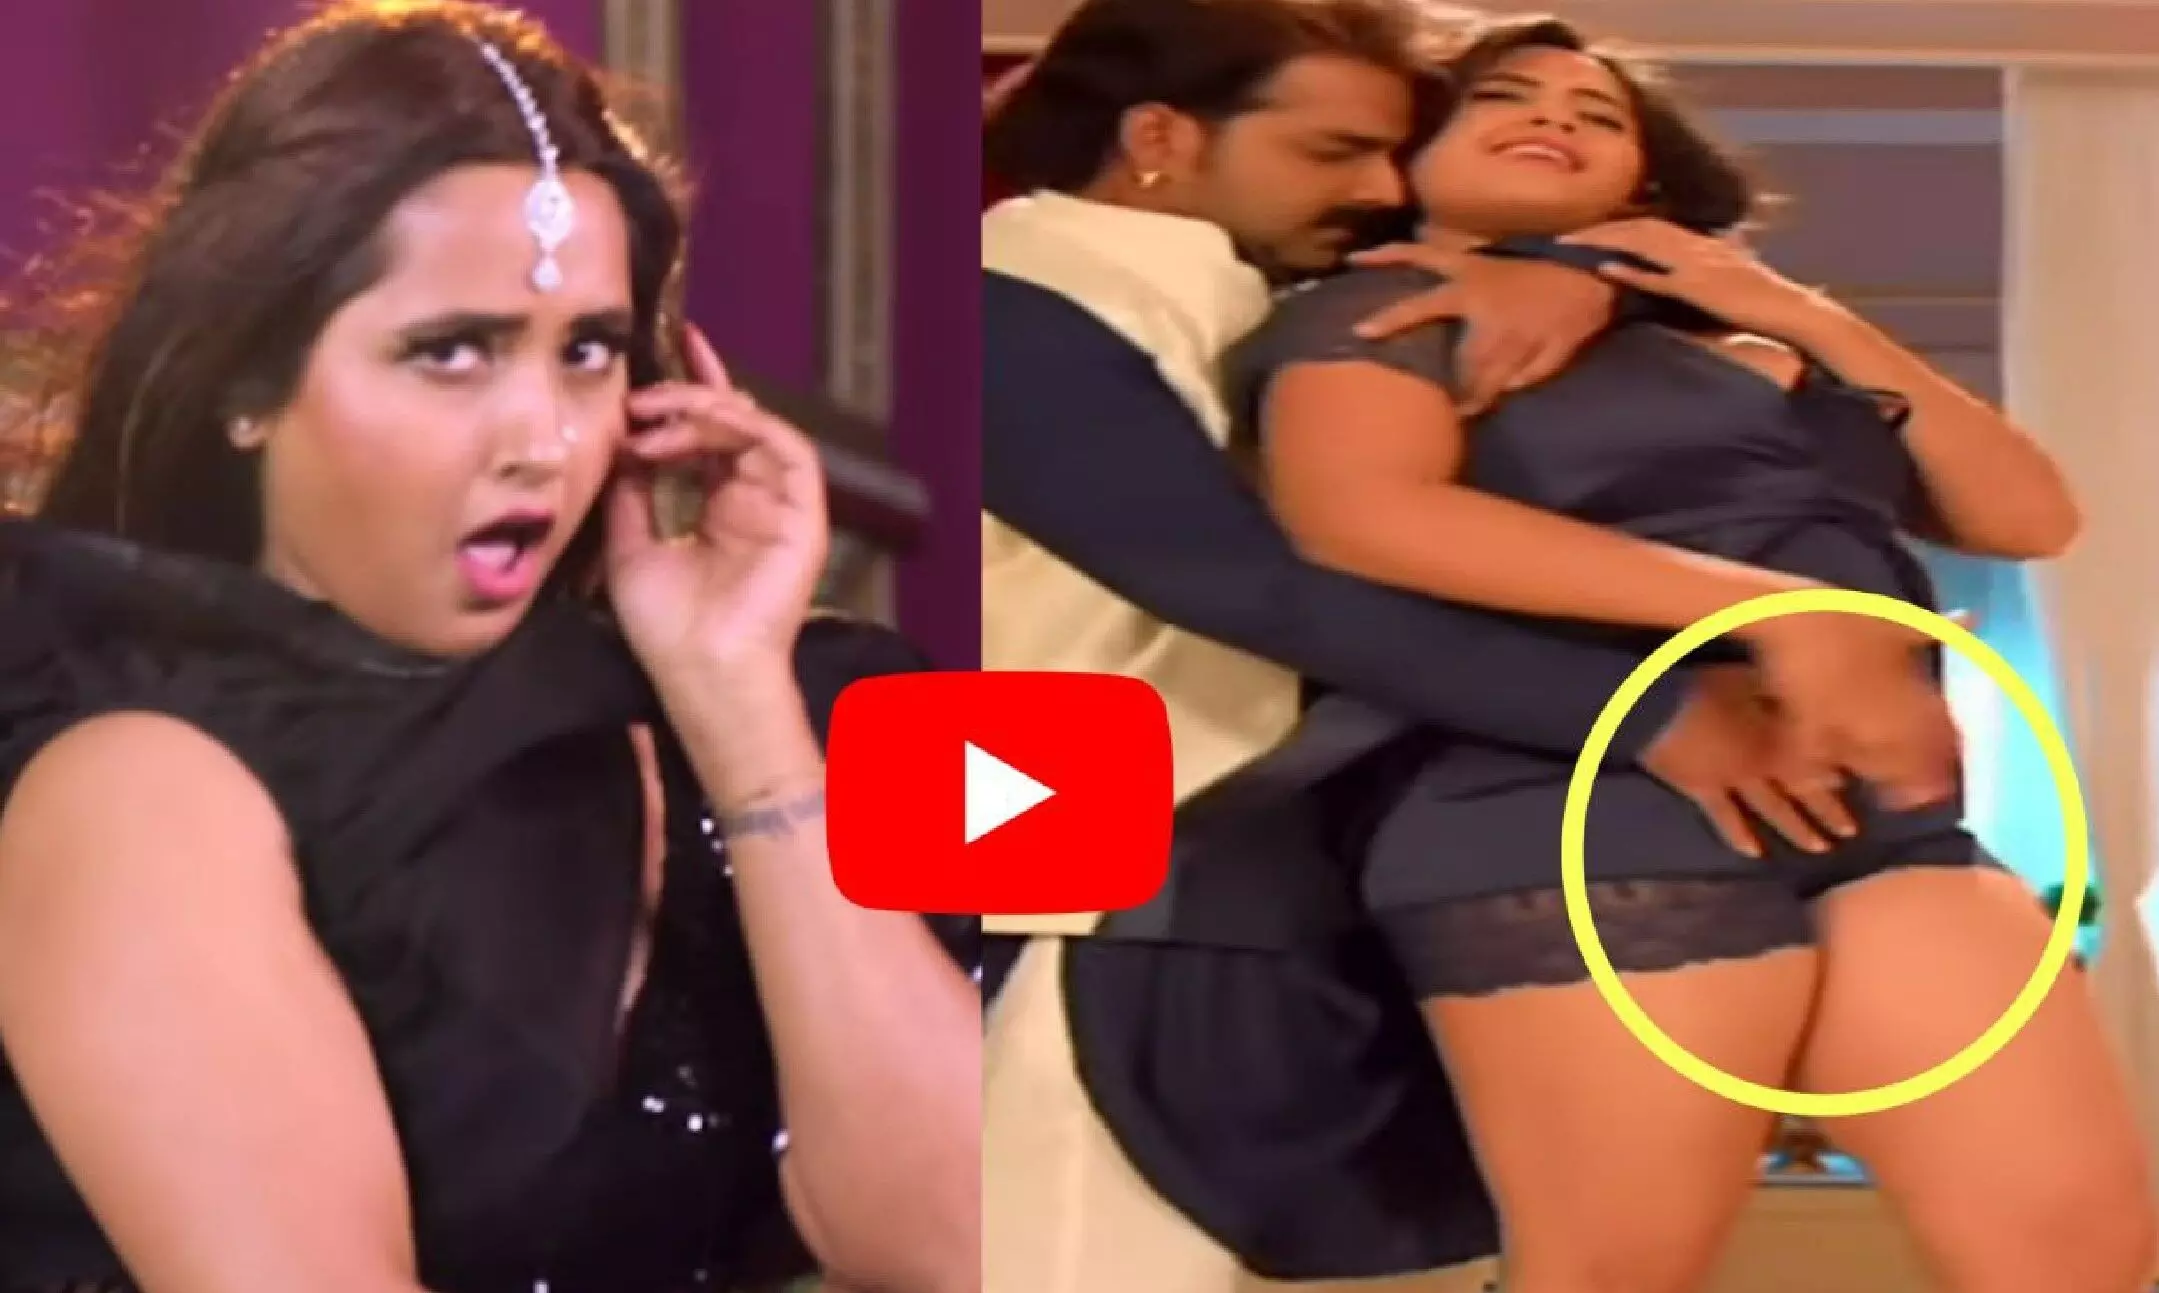 Kajal Raghwani HOT Video: à¤•à¤¾à¤œà¤² à¤°à¤¾à¤˜à¤µà¤¾à¤¨à¥€ à¤•à¤¾ à¤¹à¥‰à¤Ÿ à¤µà¥€à¤¡à¤¿à¤¯à¥‹ à¤¦à¥‡à¤– à¤¦à¥€à¤µà¤¾à¤¨à¥‡ à¤¹à¥‹ à¤—à¤ à¤«à¥ˆà¤¨à¥à¤¸  | Kajal Raghwani HOT Video: Fans went crazy after watching Kajal Raghwani's  hot video